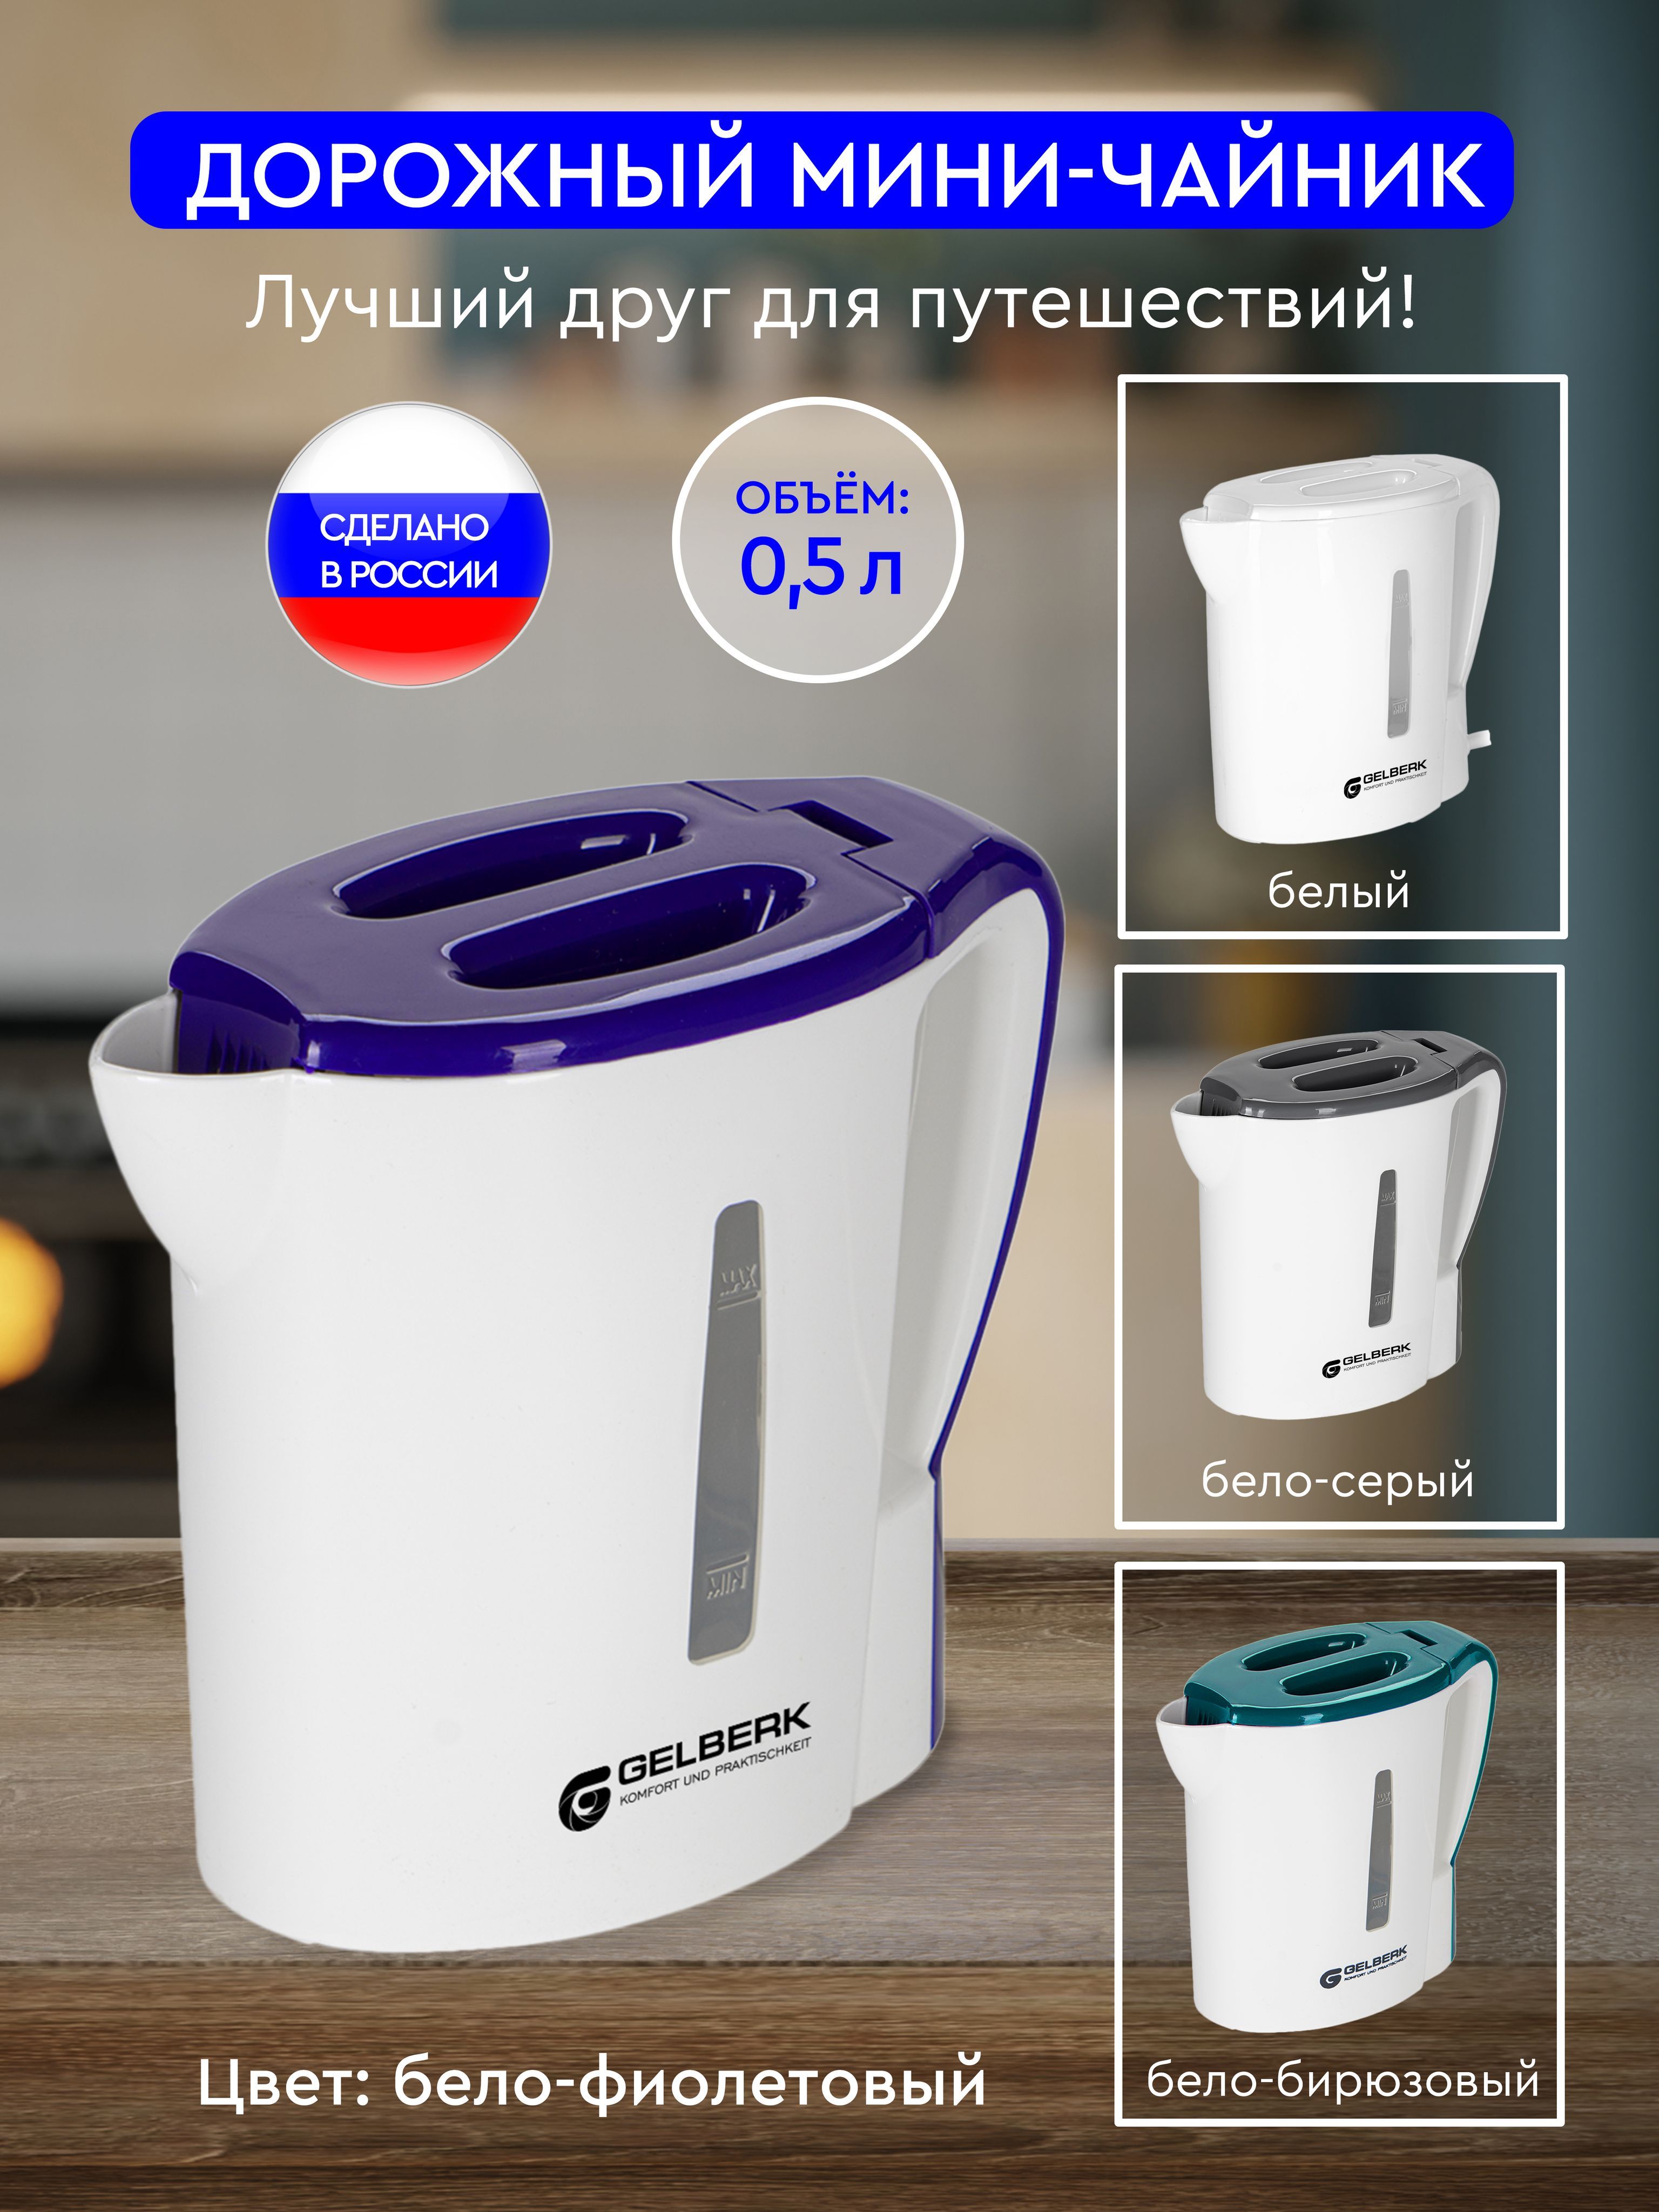 Чайник электрический дорожный / GL-466 от Gelberk / Объем: 0,5л / фиолетовый / мини-чайник / кипятильник / фиолетовый